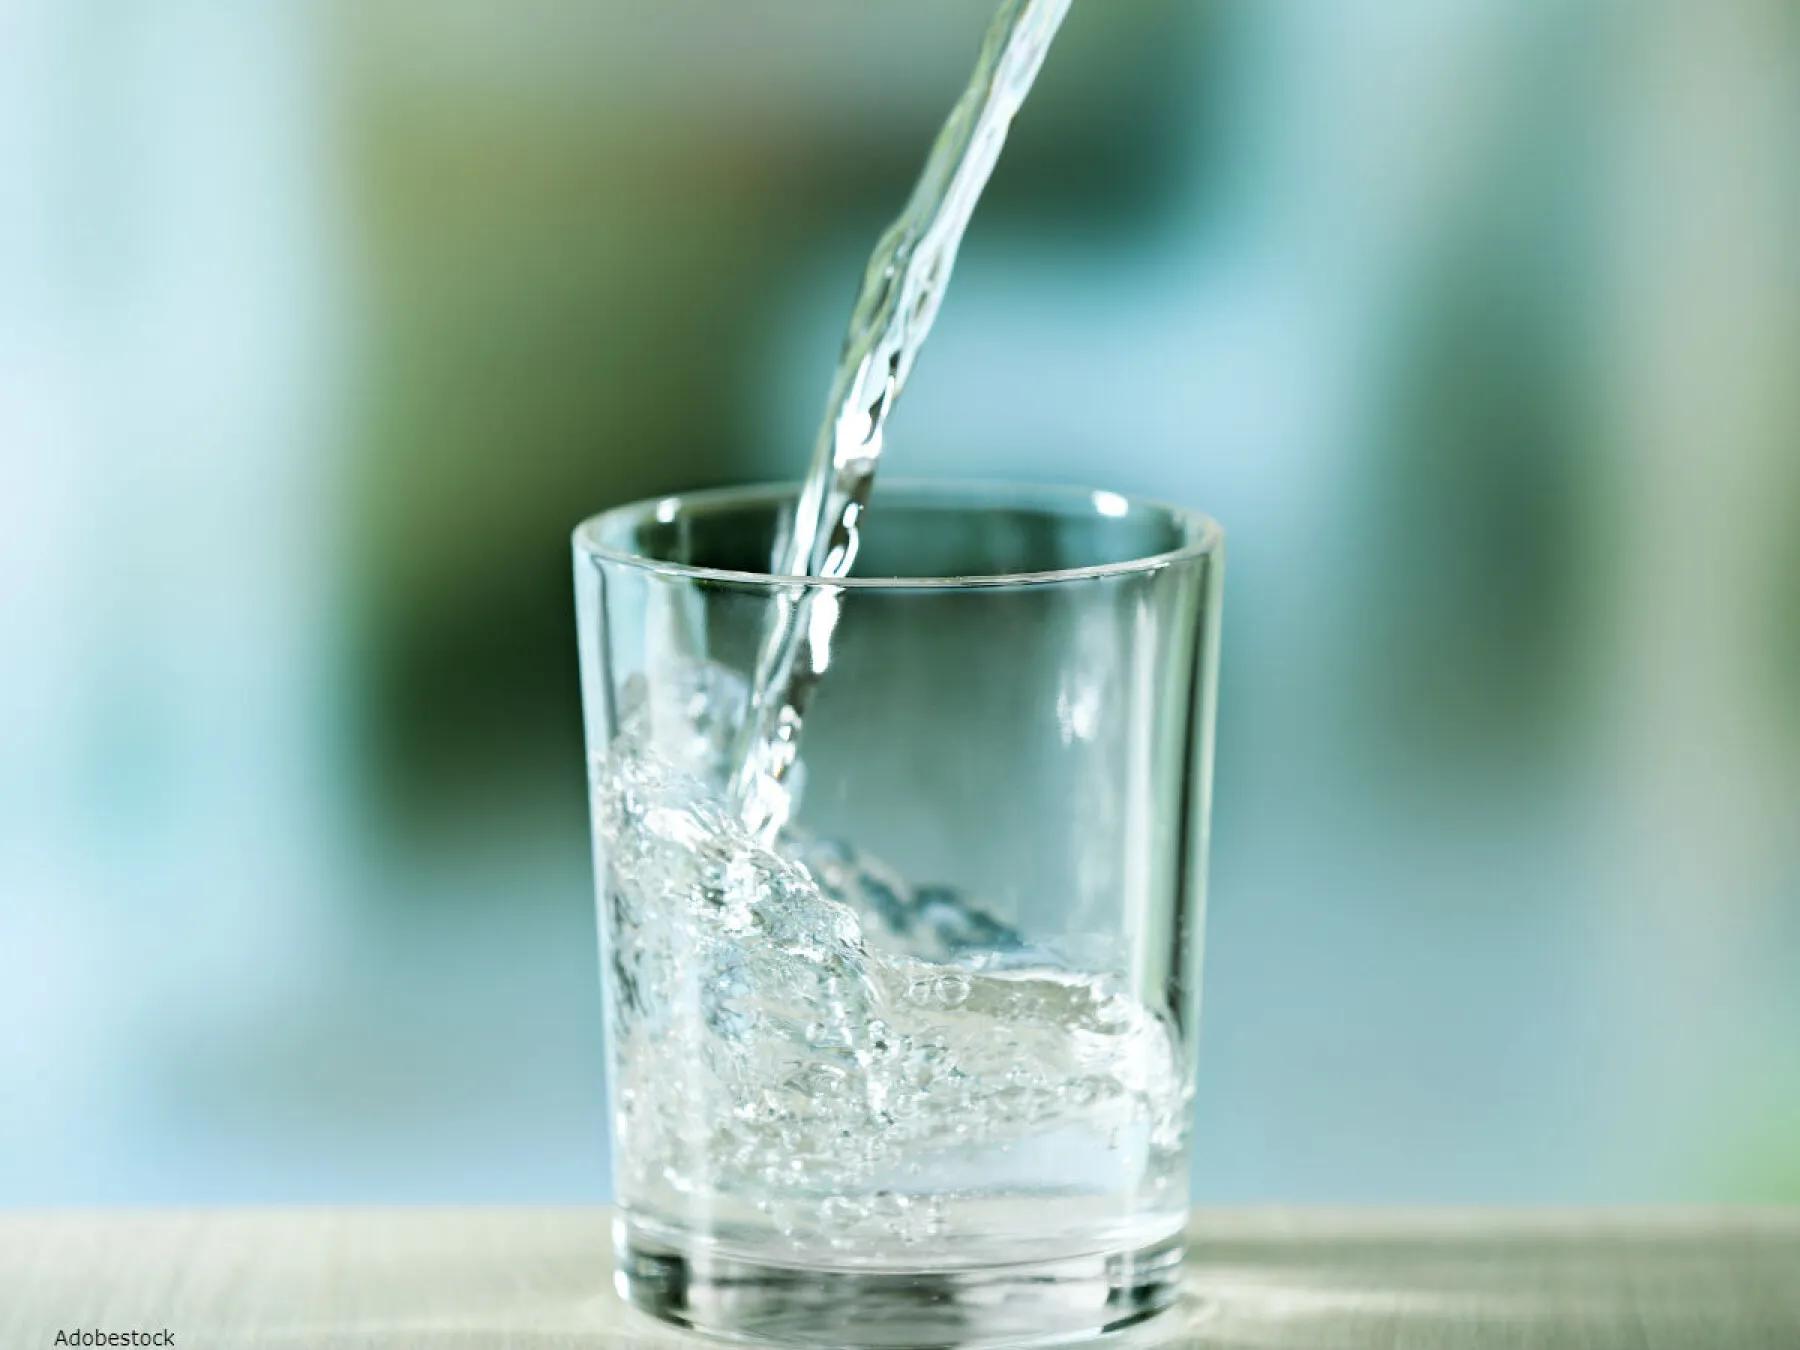 Les 5 principaux avantages de l'eau potable pour la santé